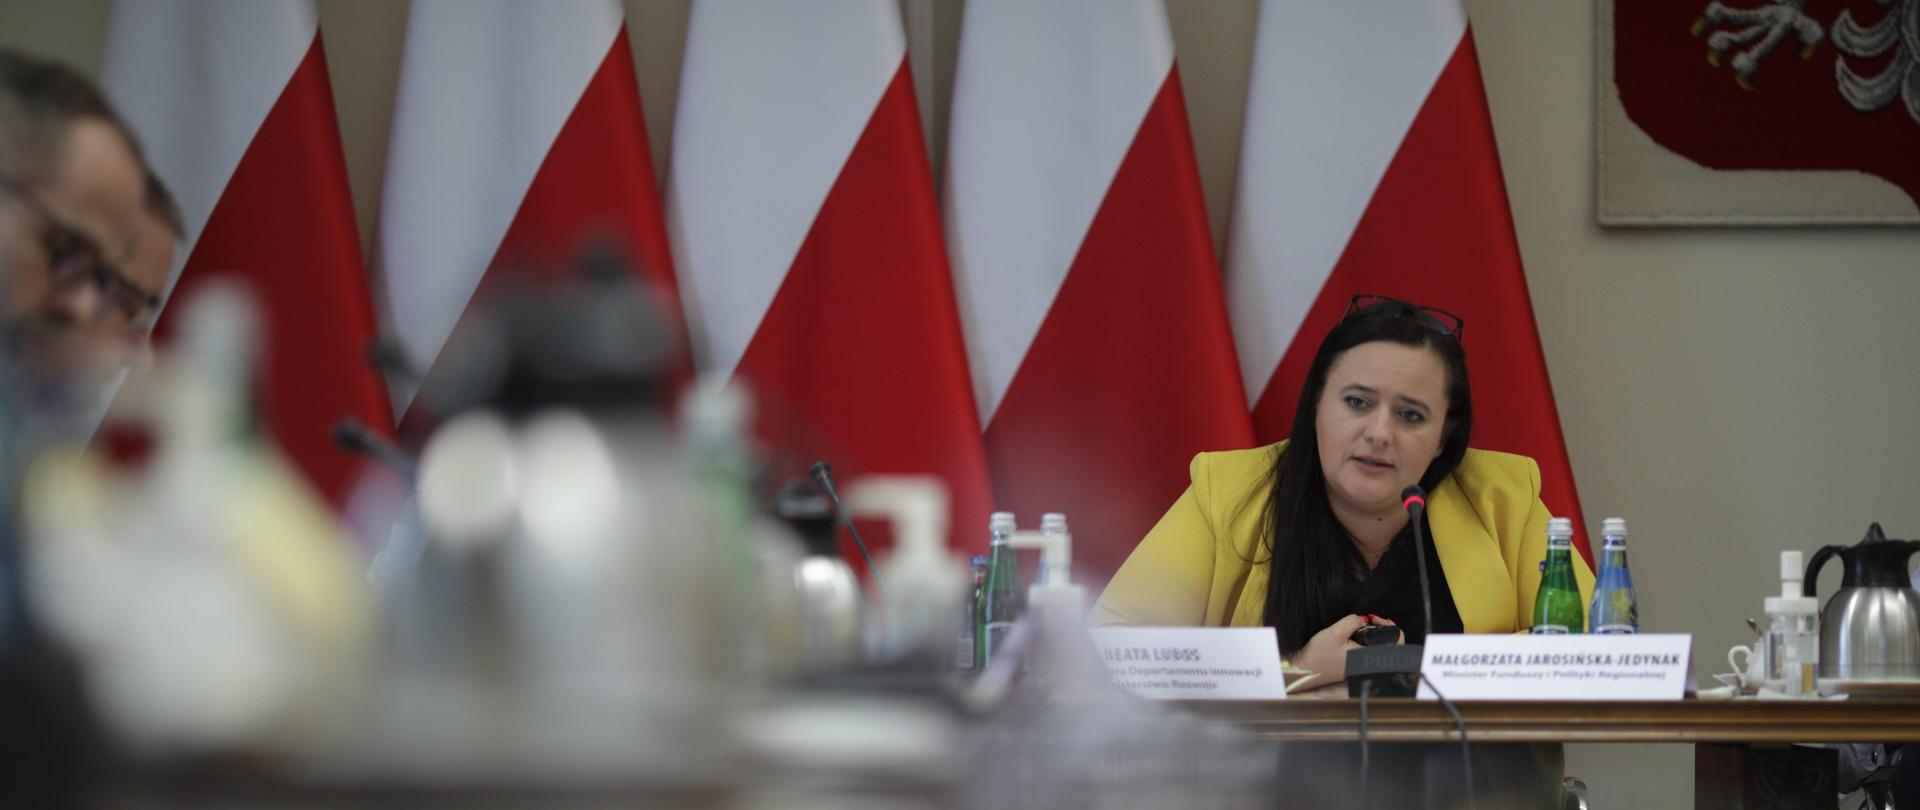 Minister Jarosińska-Jedynak siedzi przy stole, mówi do mikrofonu za nią stoją flagi Polski 